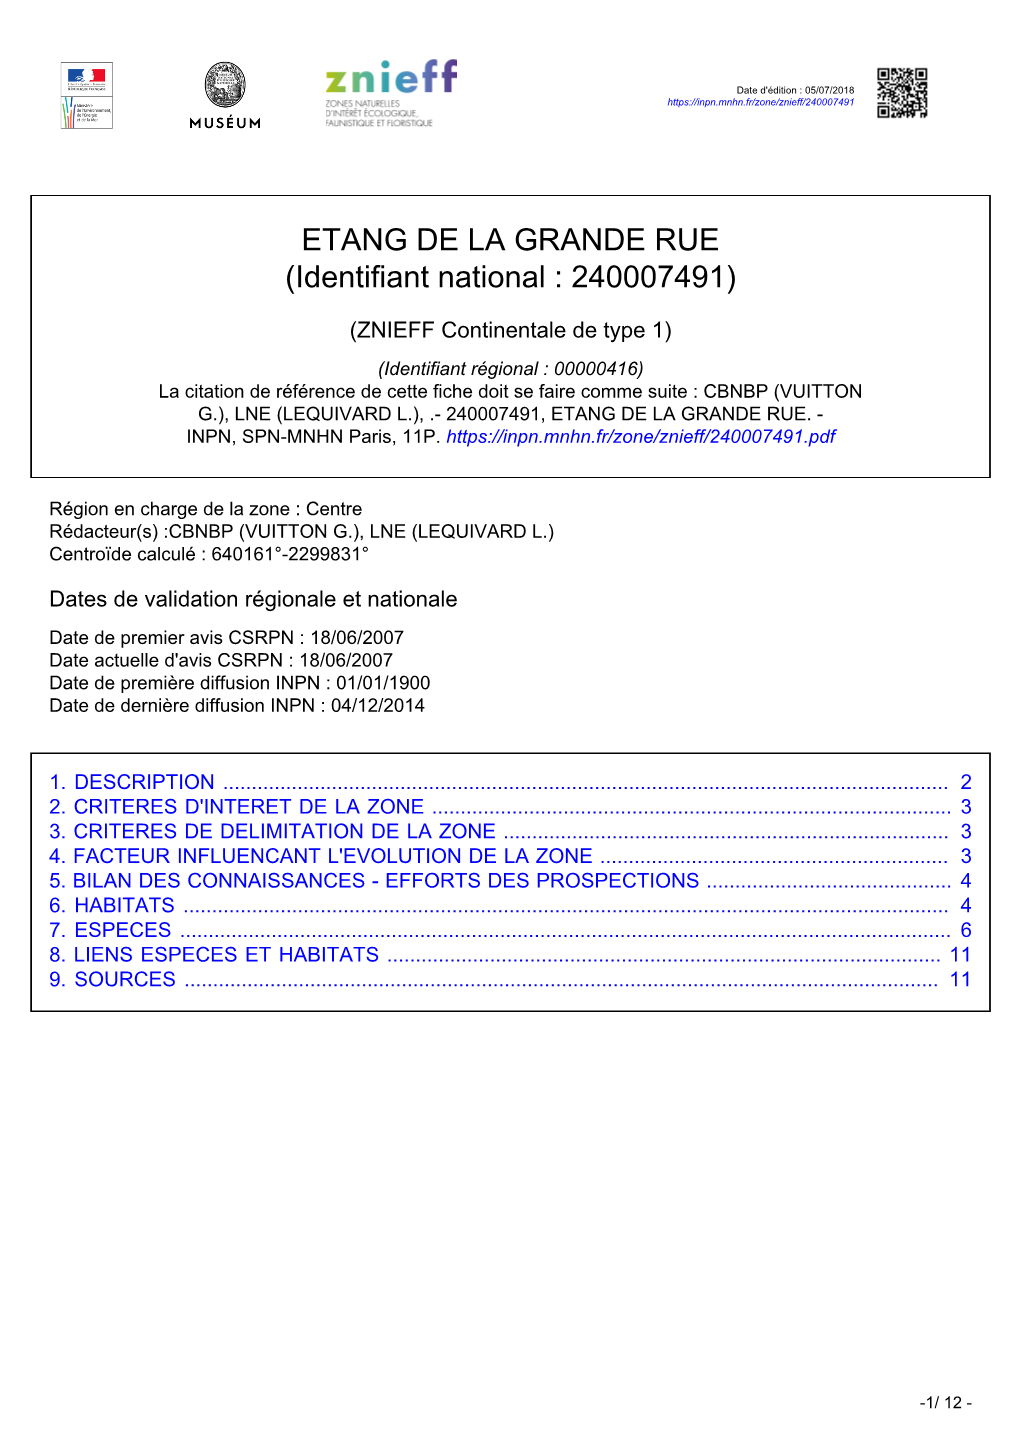 ETANG DE LA GRANDE RUE (Identifiant National : 240007491)